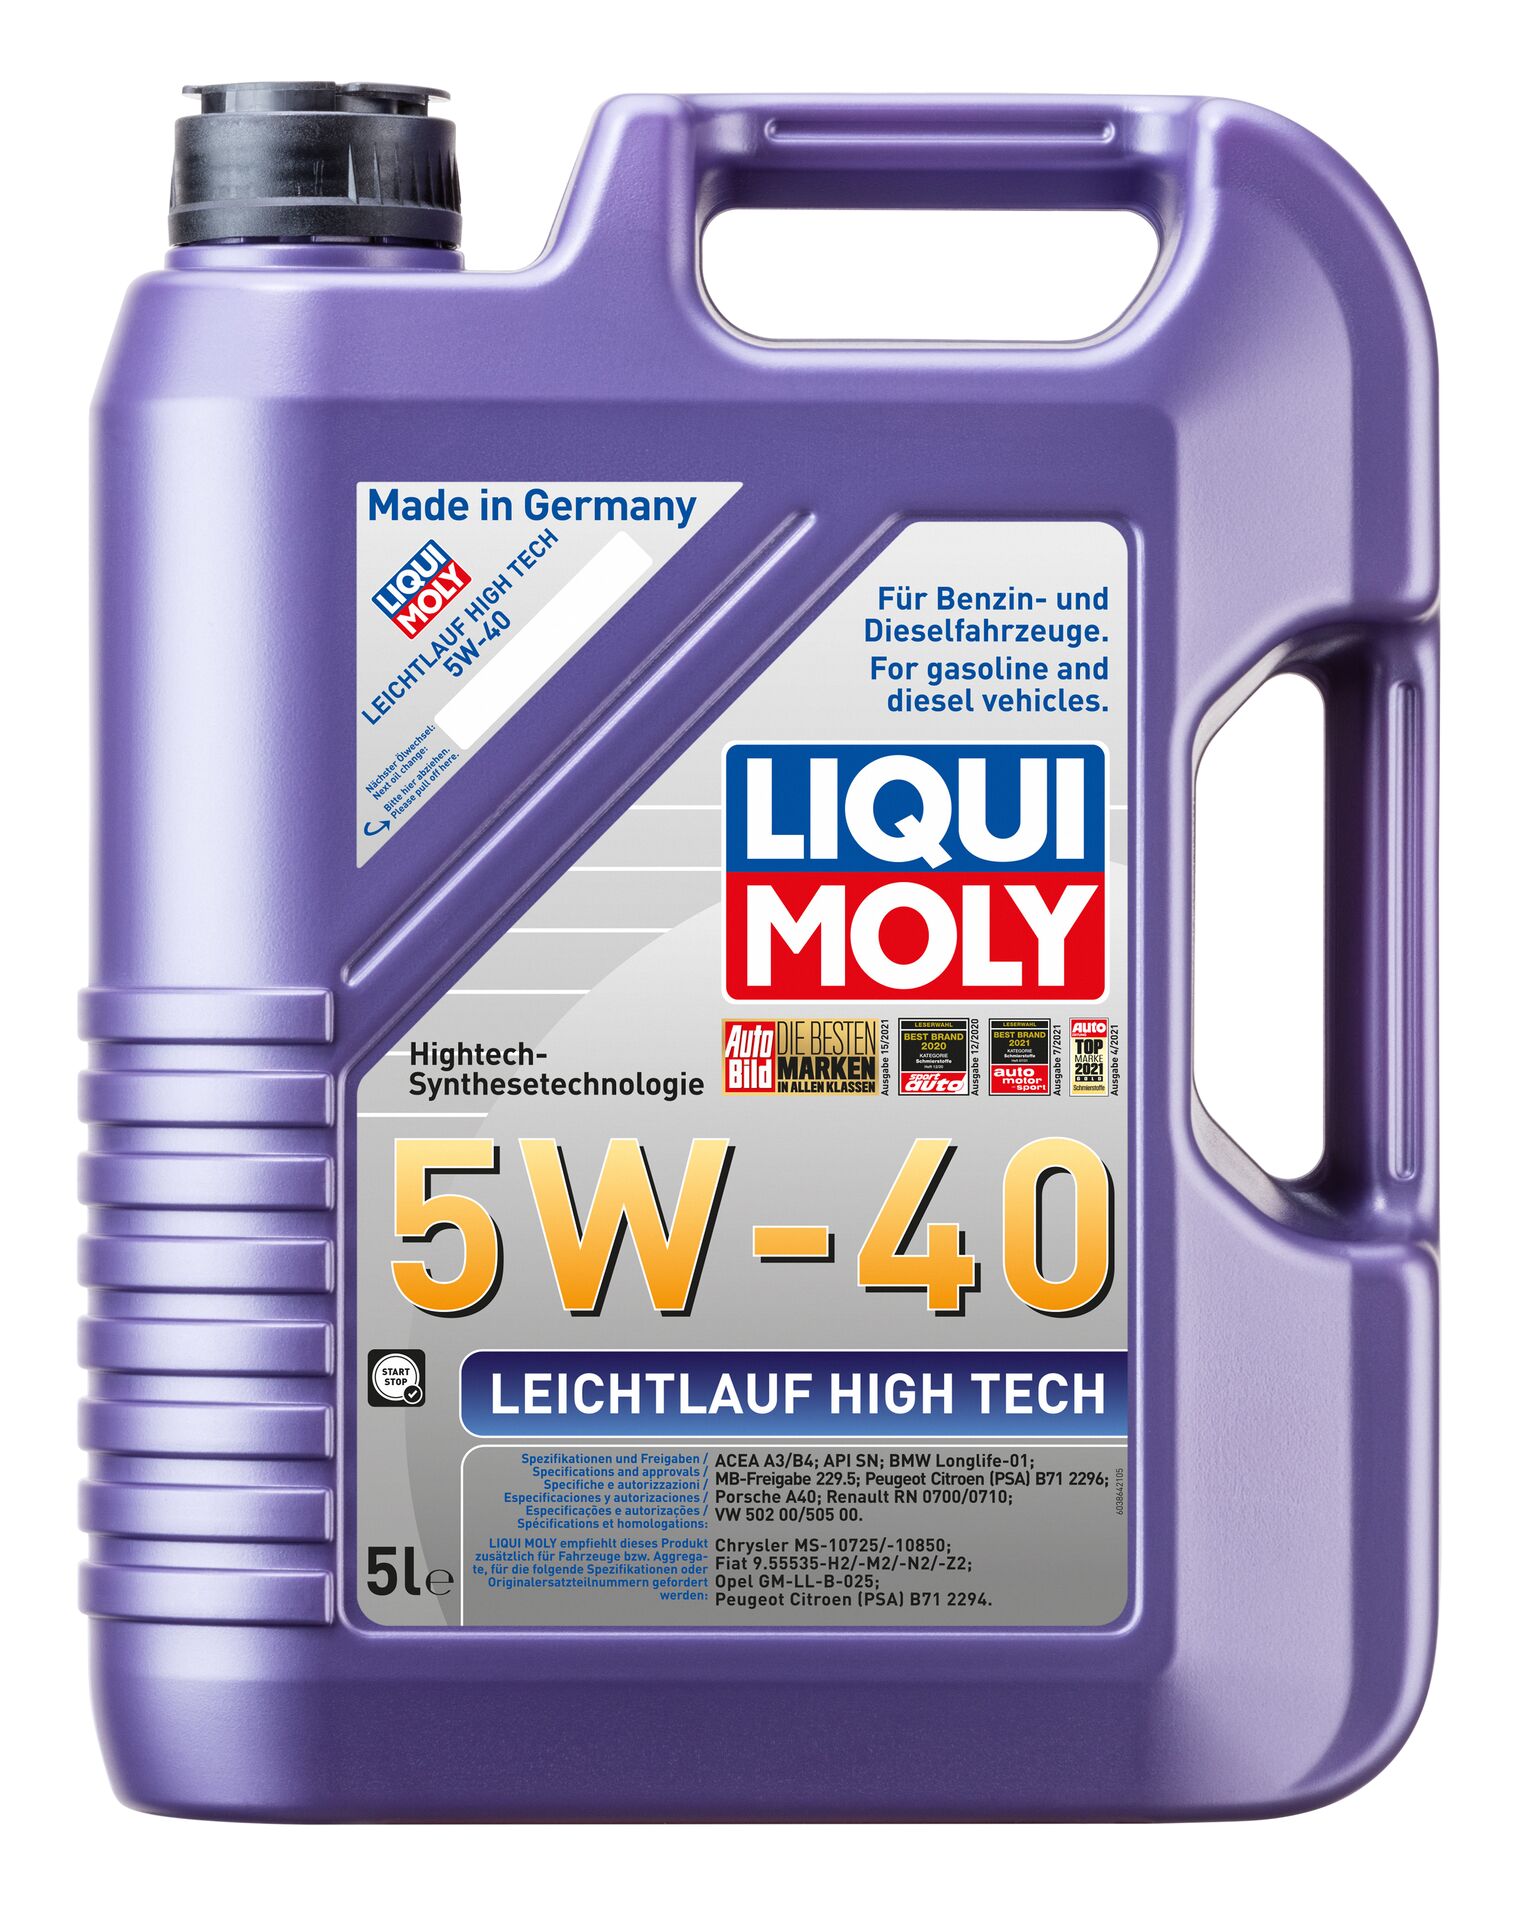 LIQUI-MOLY Motorenöl Leichtlauf High Tech 5W-40 5 l 